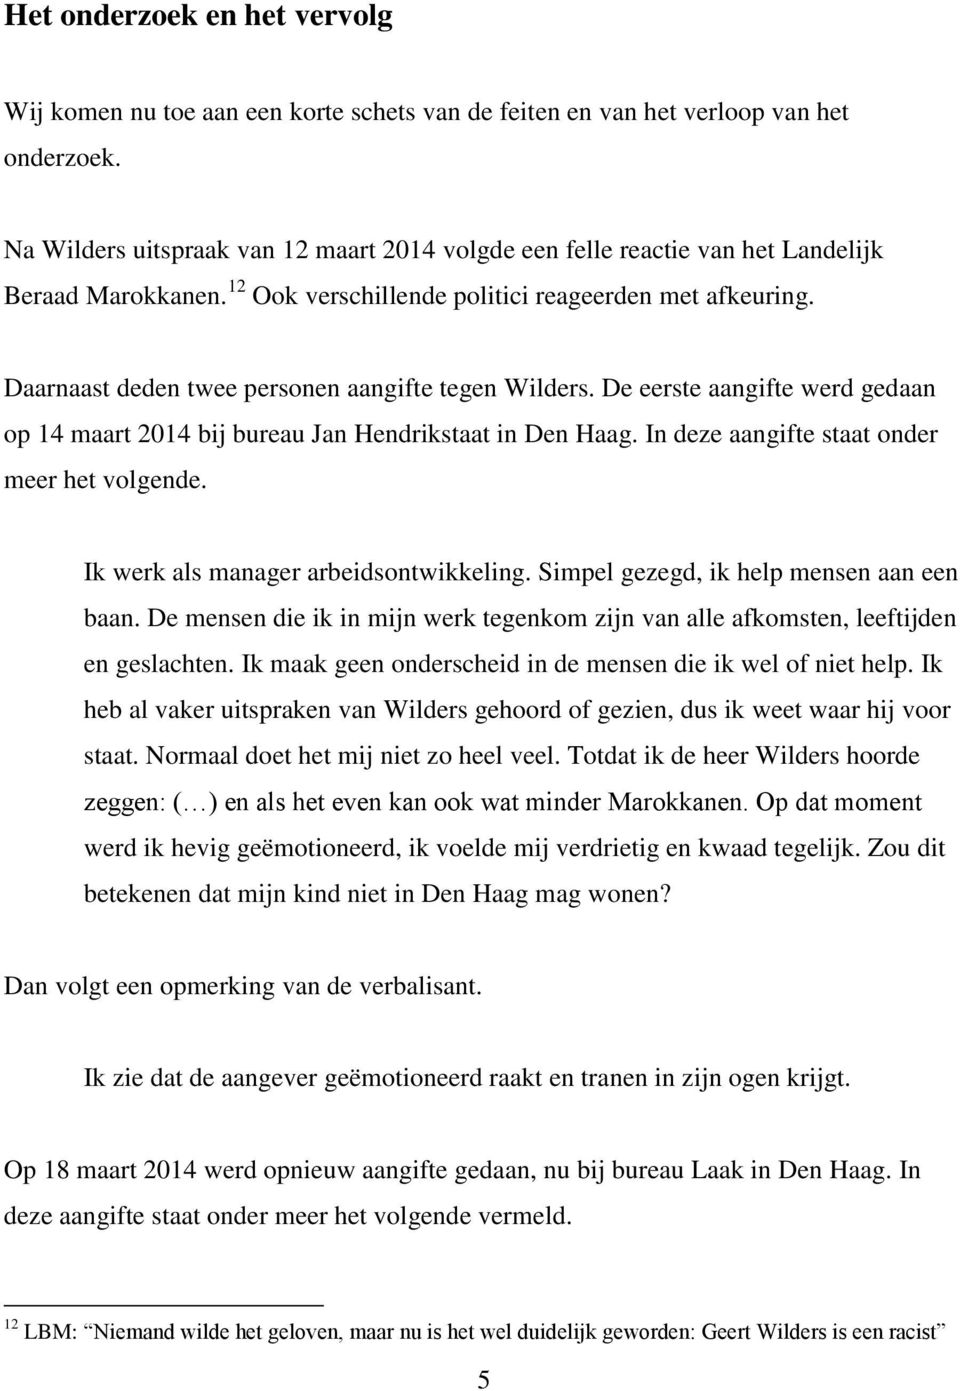 Daarnaast deden twee personen aangifte tegen Wilders. De eerste aangifte werd gedaan op 14 maart 2014 bij bureau Jan Hendrikstaat in Den Haag. In deze aangifte staat onder meer het volgende.